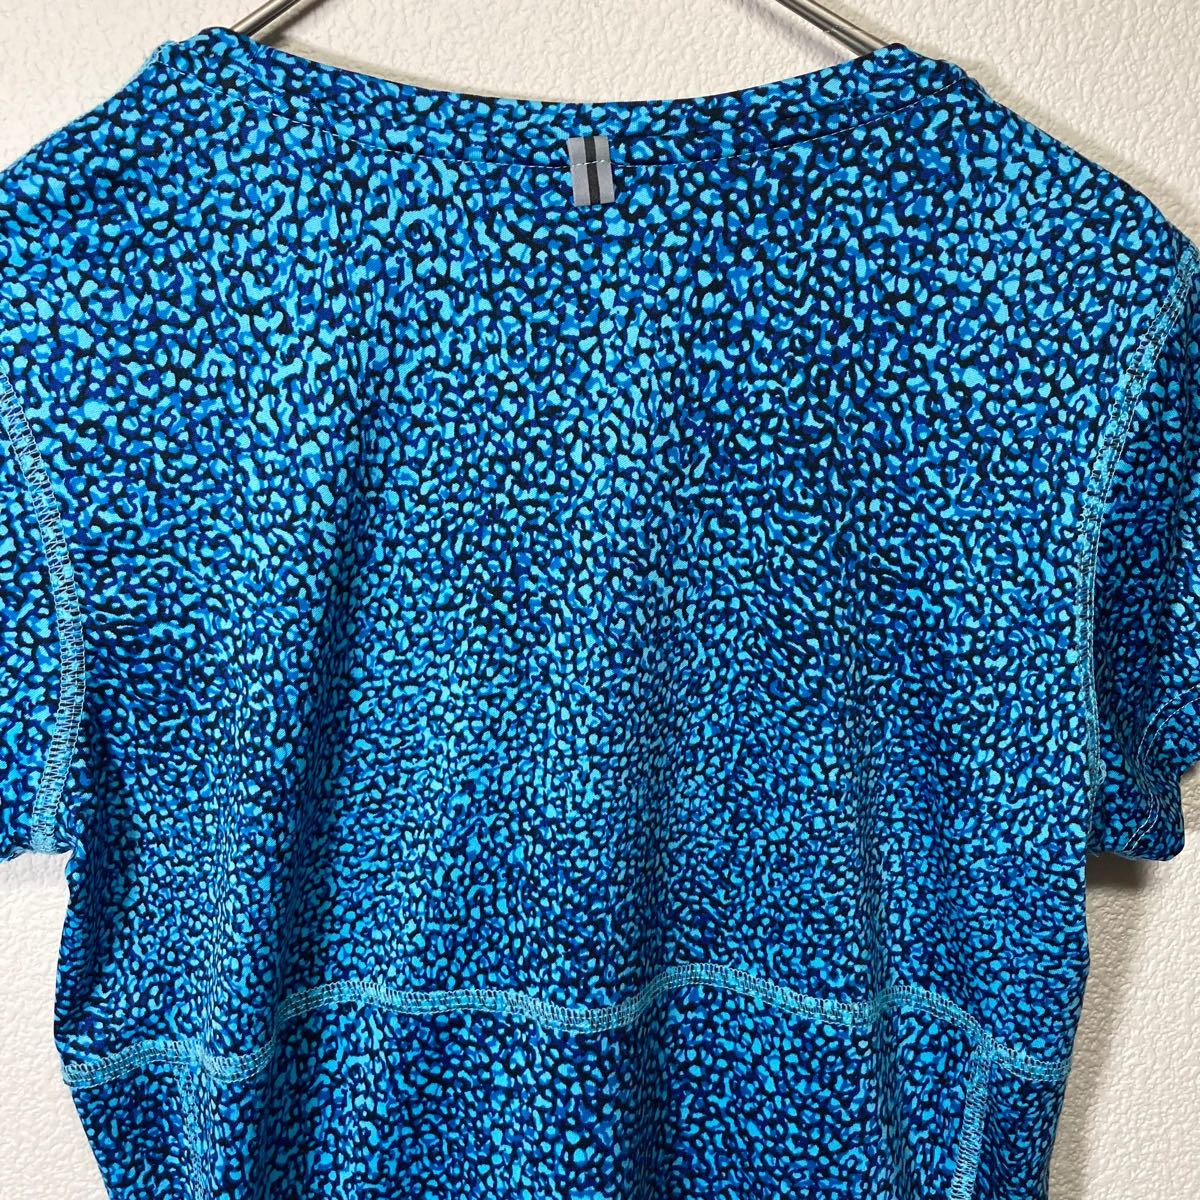 NIKE DRY-FIT ランニング ウェア 半袖 Tシャツ レディース Sサイズ ブルー系 総柄